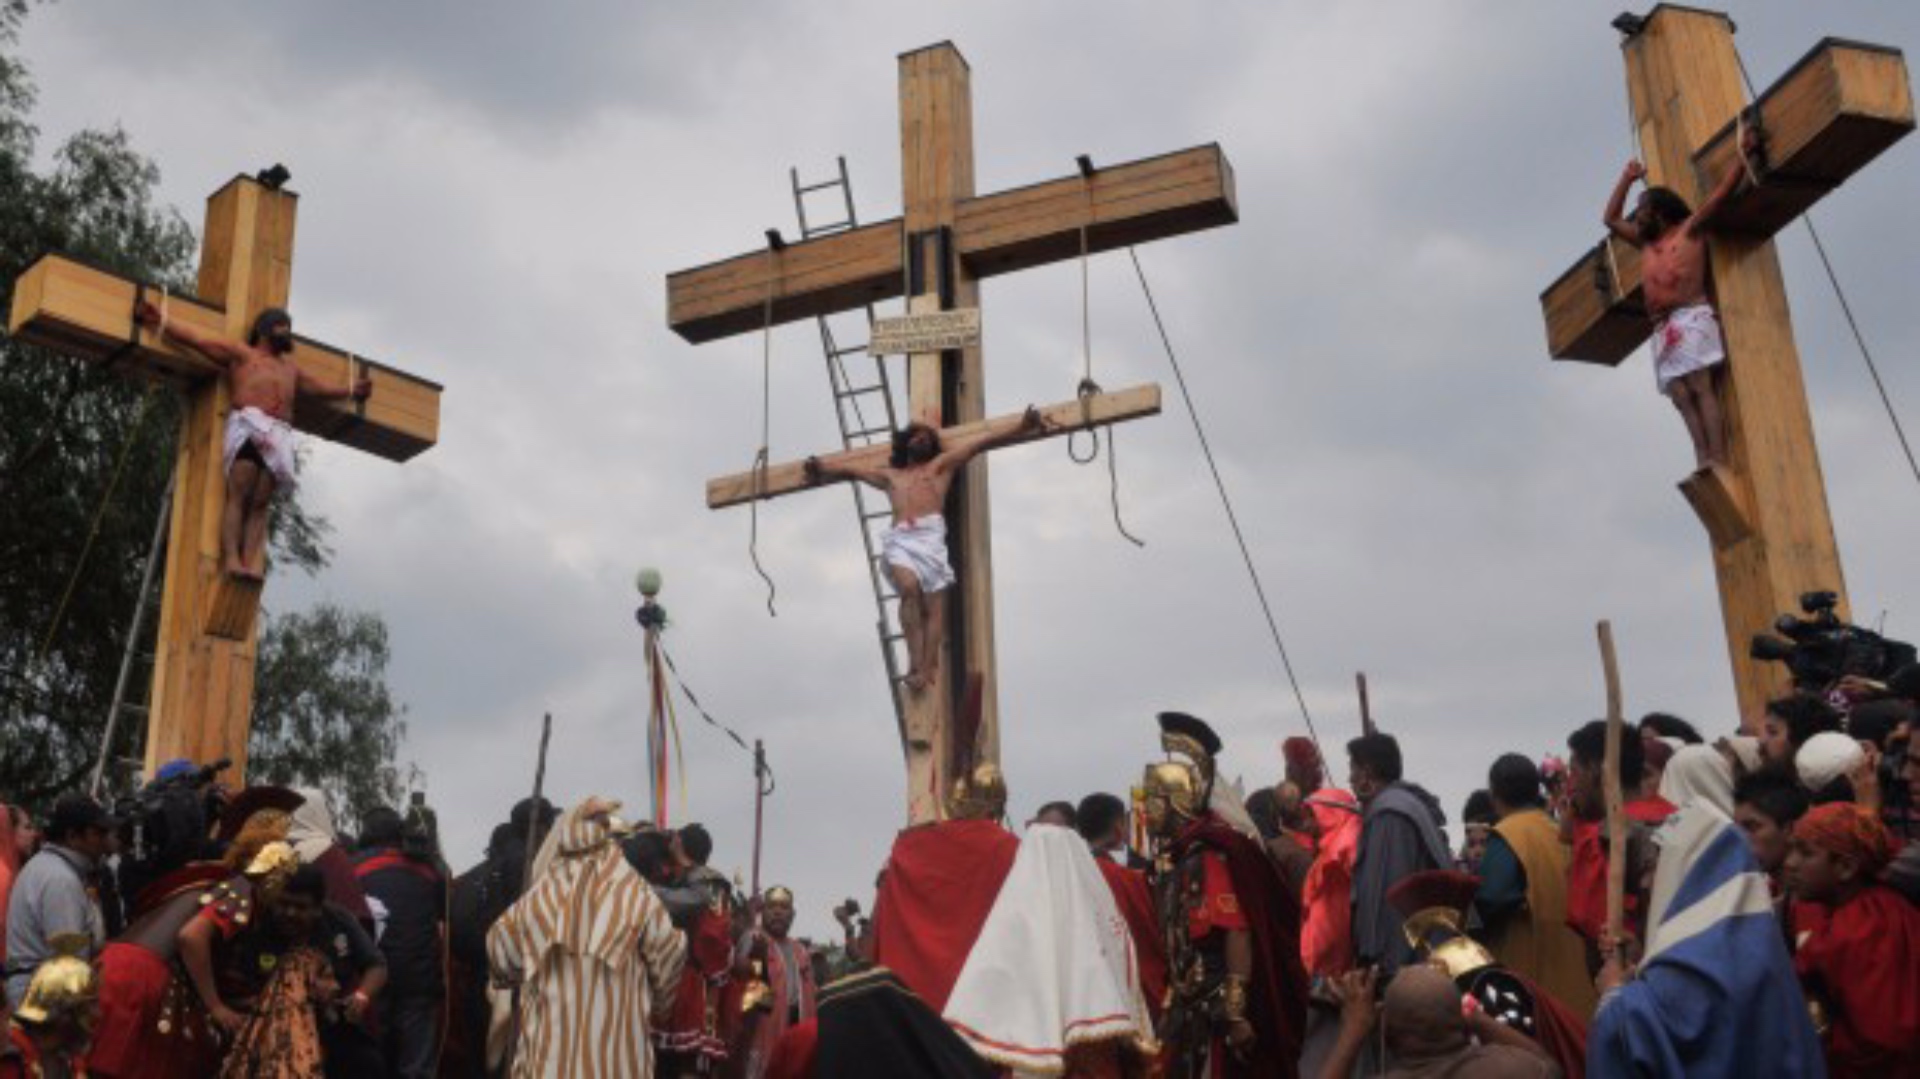 La representación de la Pasión de Cristo en Iztapalapa es considerado uno de los rituales más importantes del mundo por la cantidad de personas que asisten.
(Foto: Cuartoscuro)